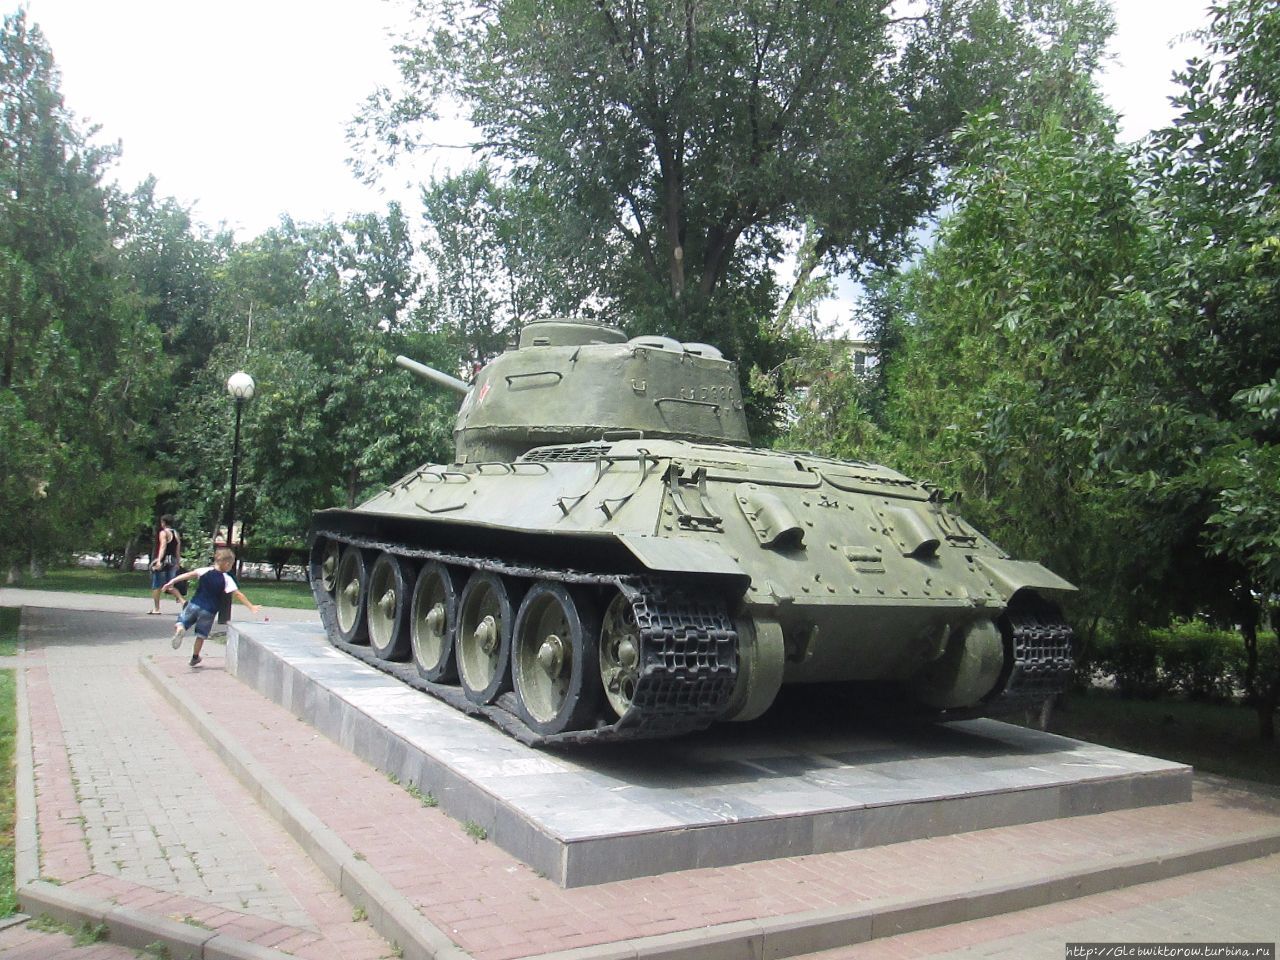 сквер им. 60 лет Сталинградской битвы Астрахань, Россия